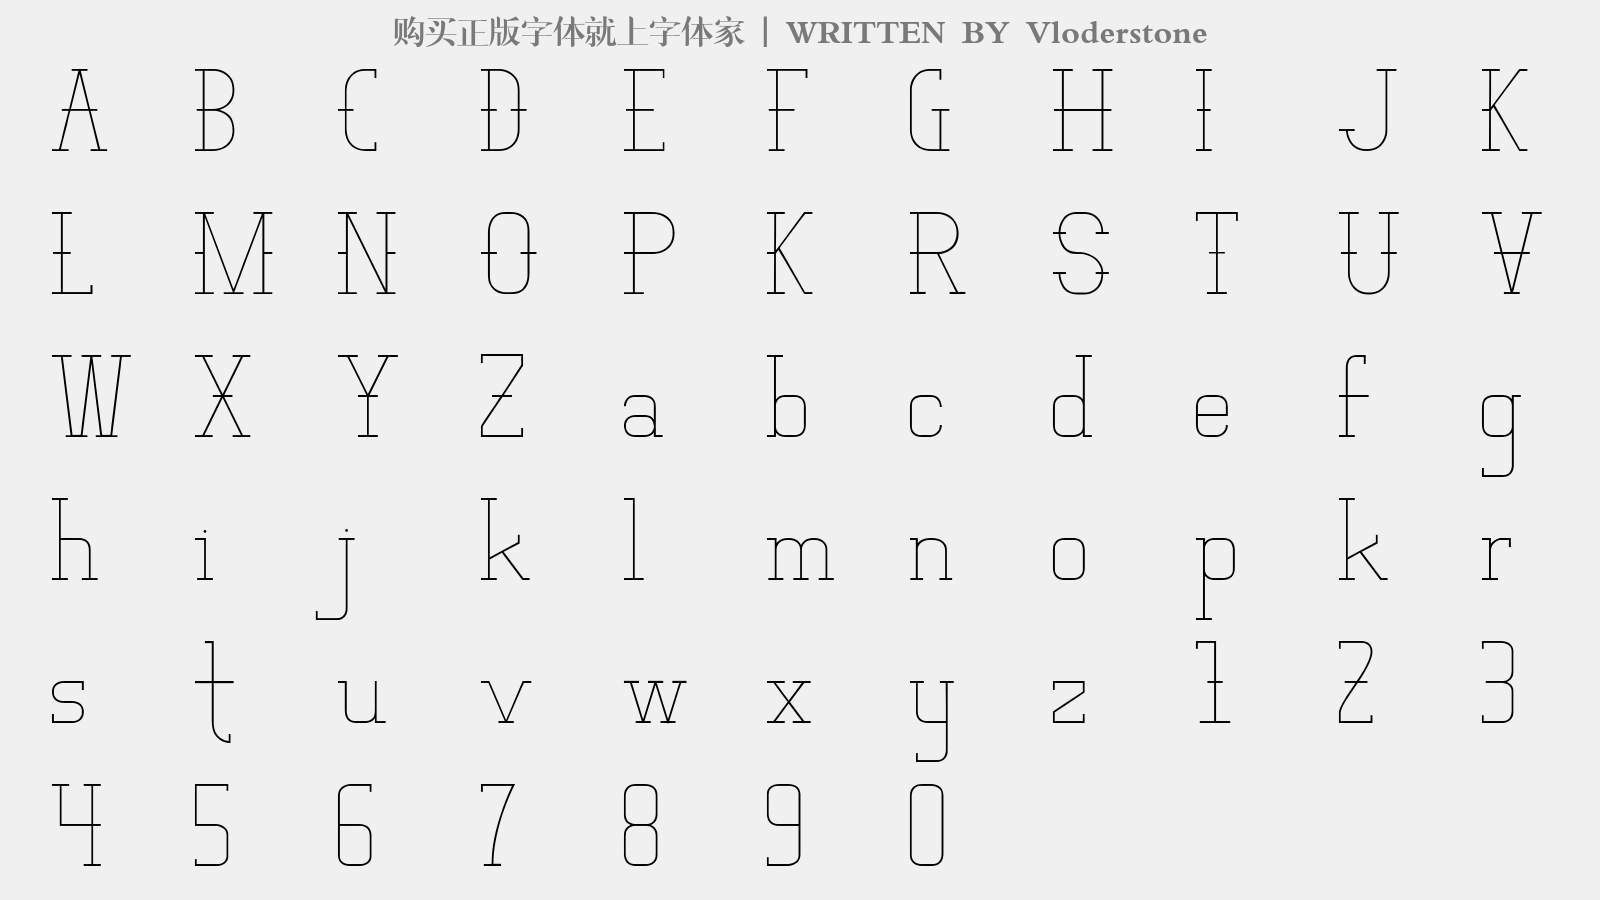 Vloderstone - 大写字母/小写字母/数字